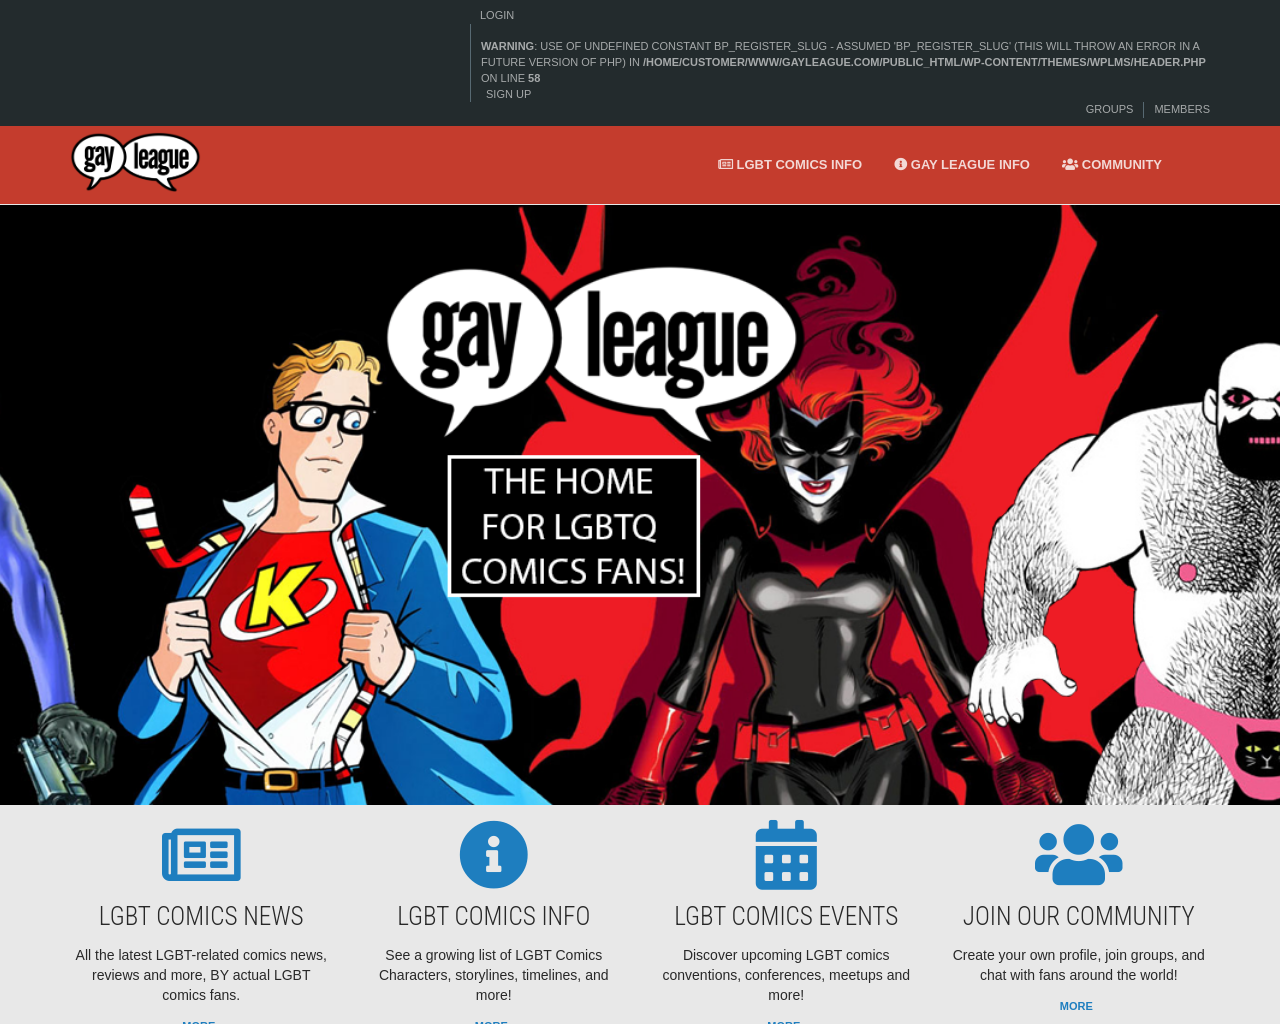 gayleague.com